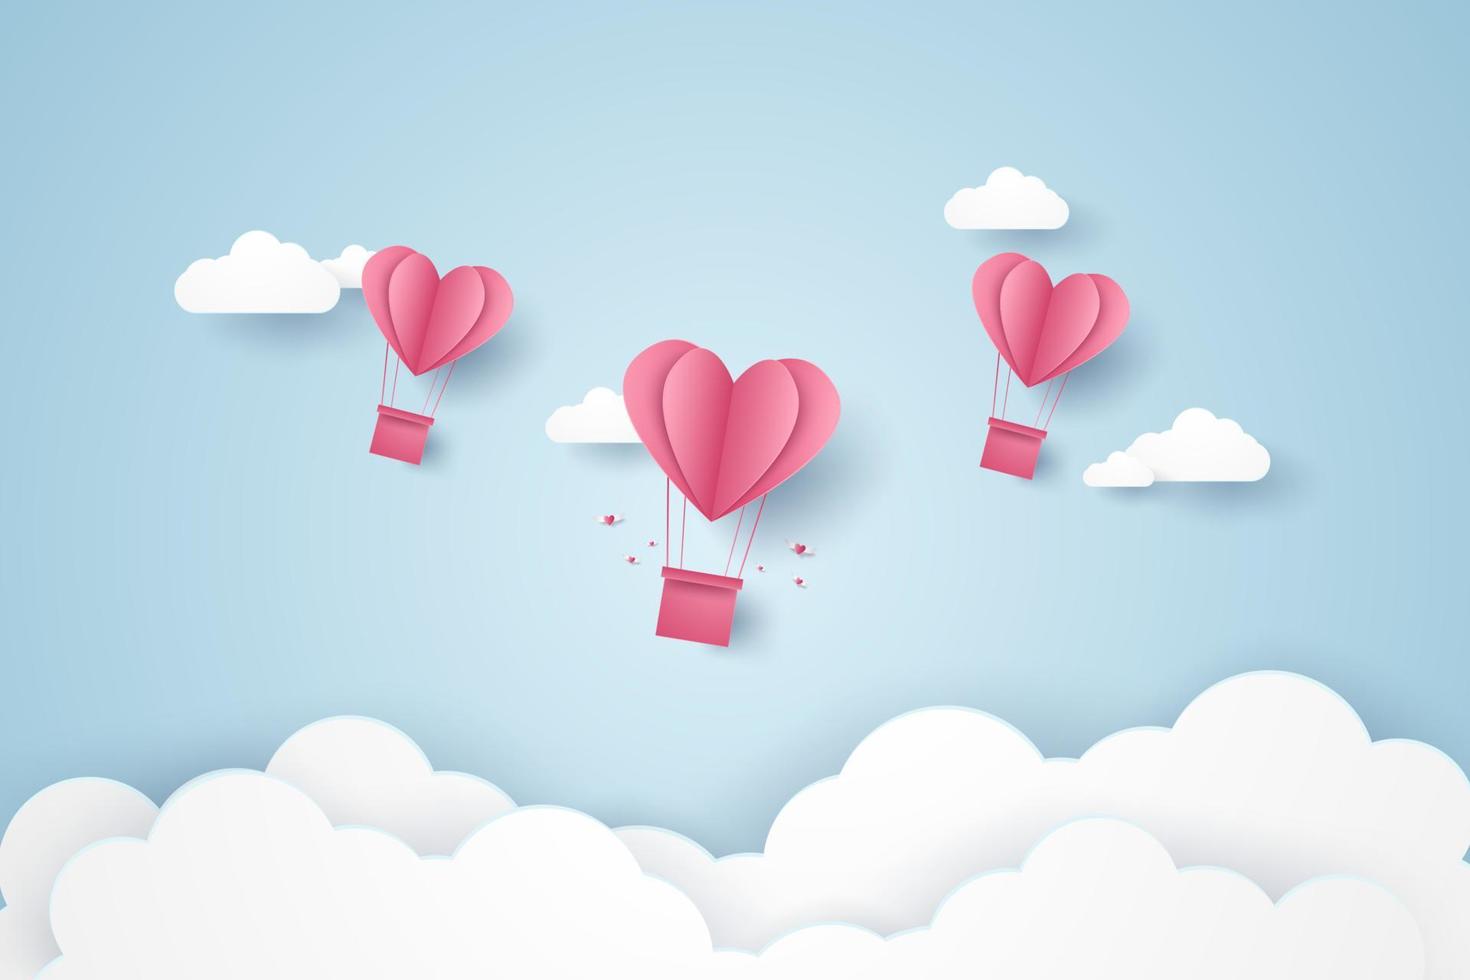 día de san valentín, ilustración del amor, globos aerostáticos de corazón rosa volando en el cielo azul, estilo de arte en papel vector